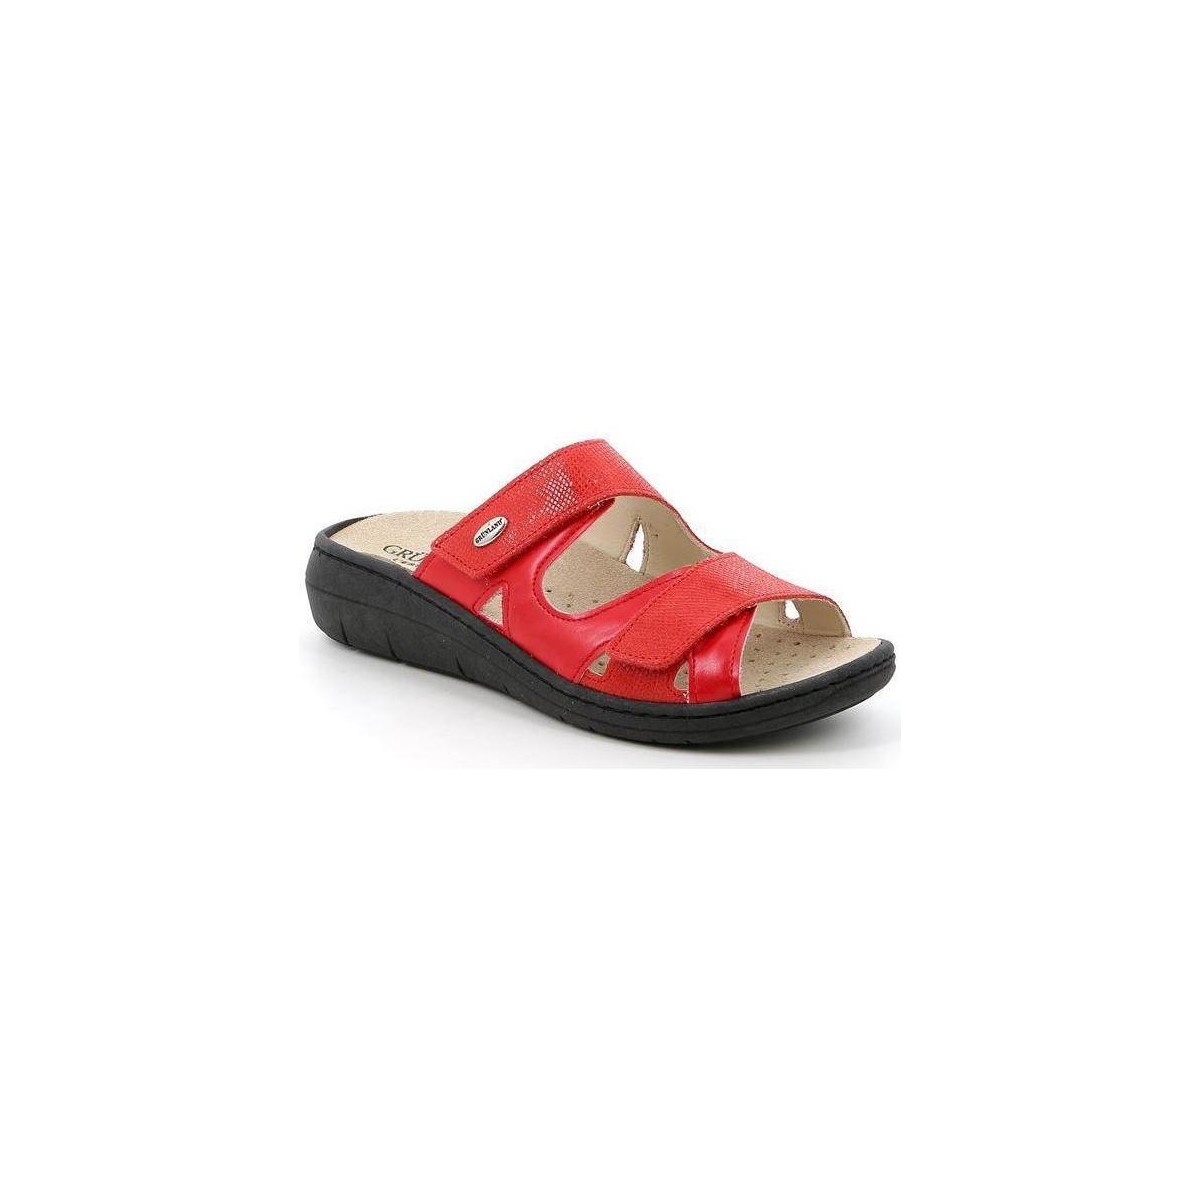 Sapatos Mulher Chinelos Grunland DSG-CE0842 Vermelho